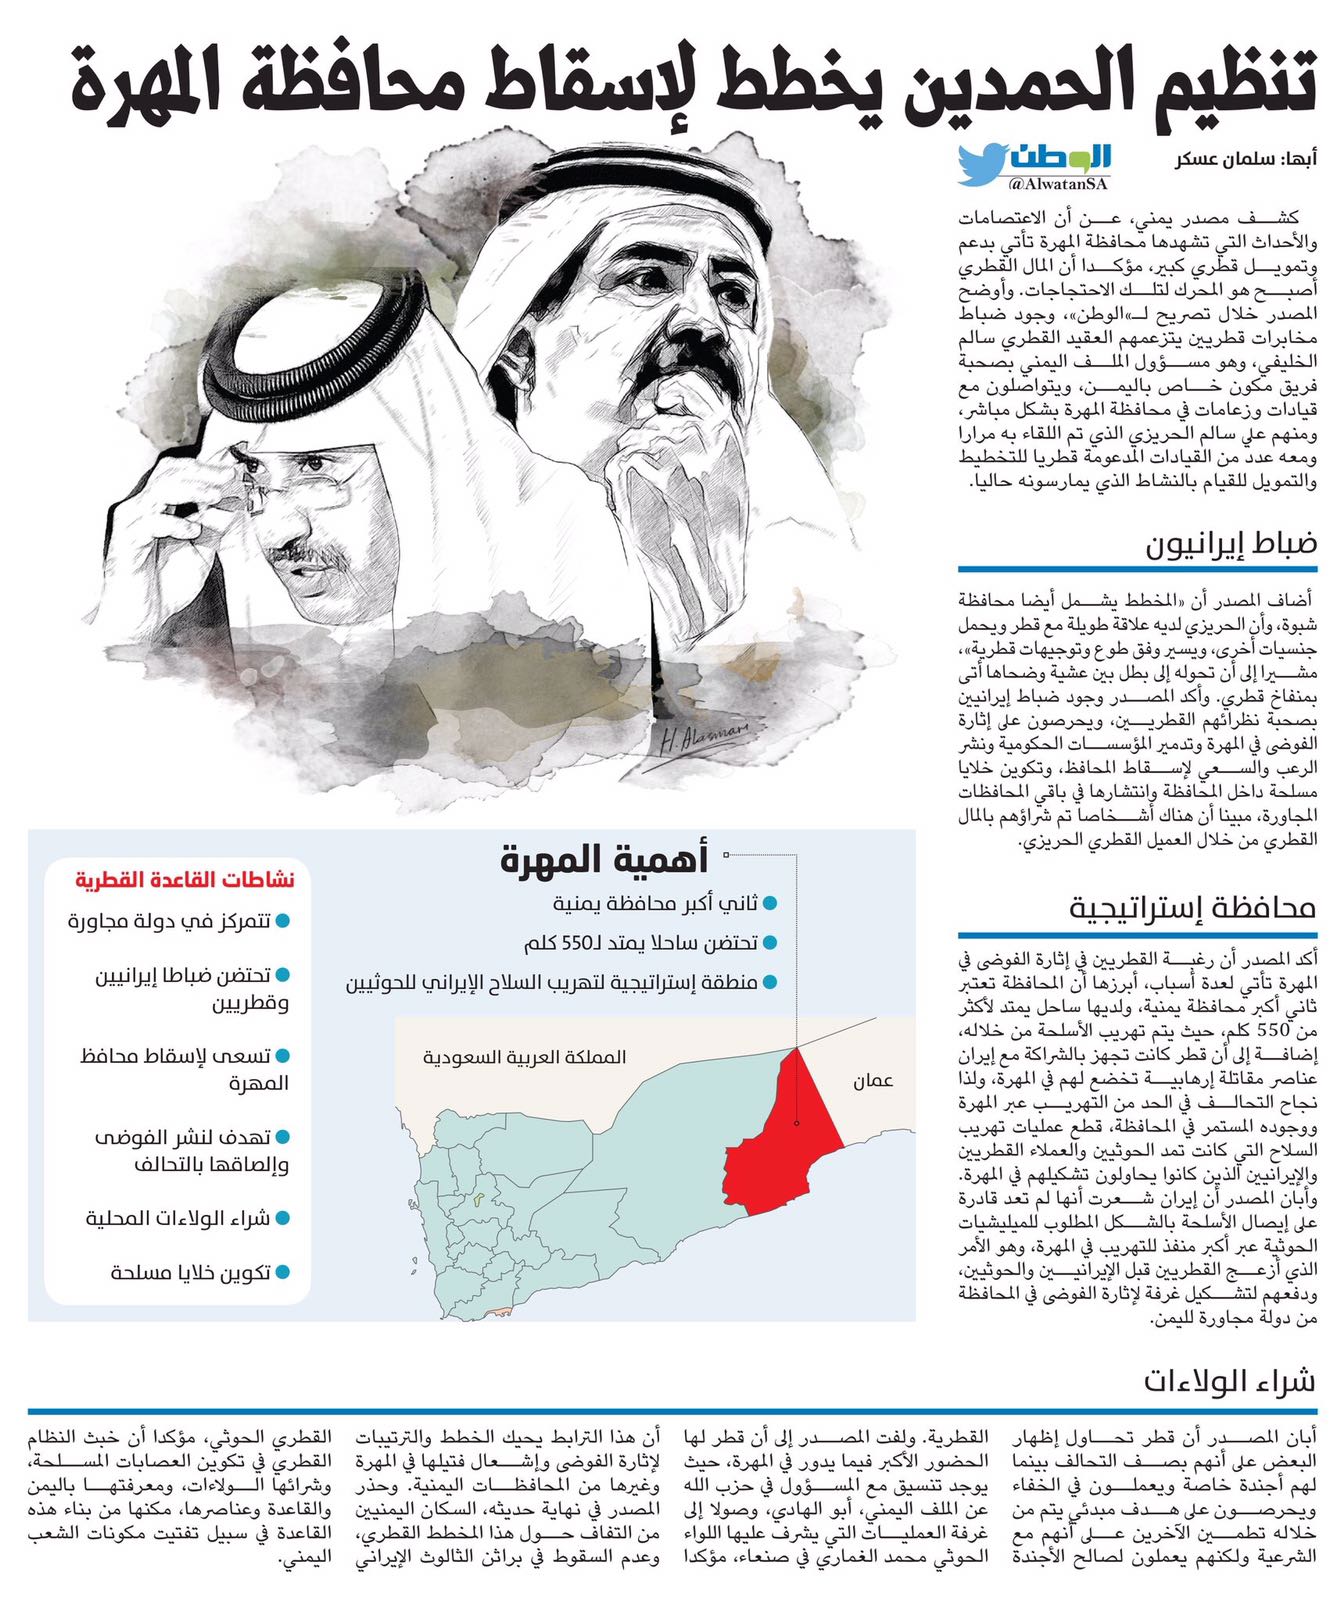 مخطط قطري لتفجير الاوضاع بالمهرة وتمويل عمليات تخريب